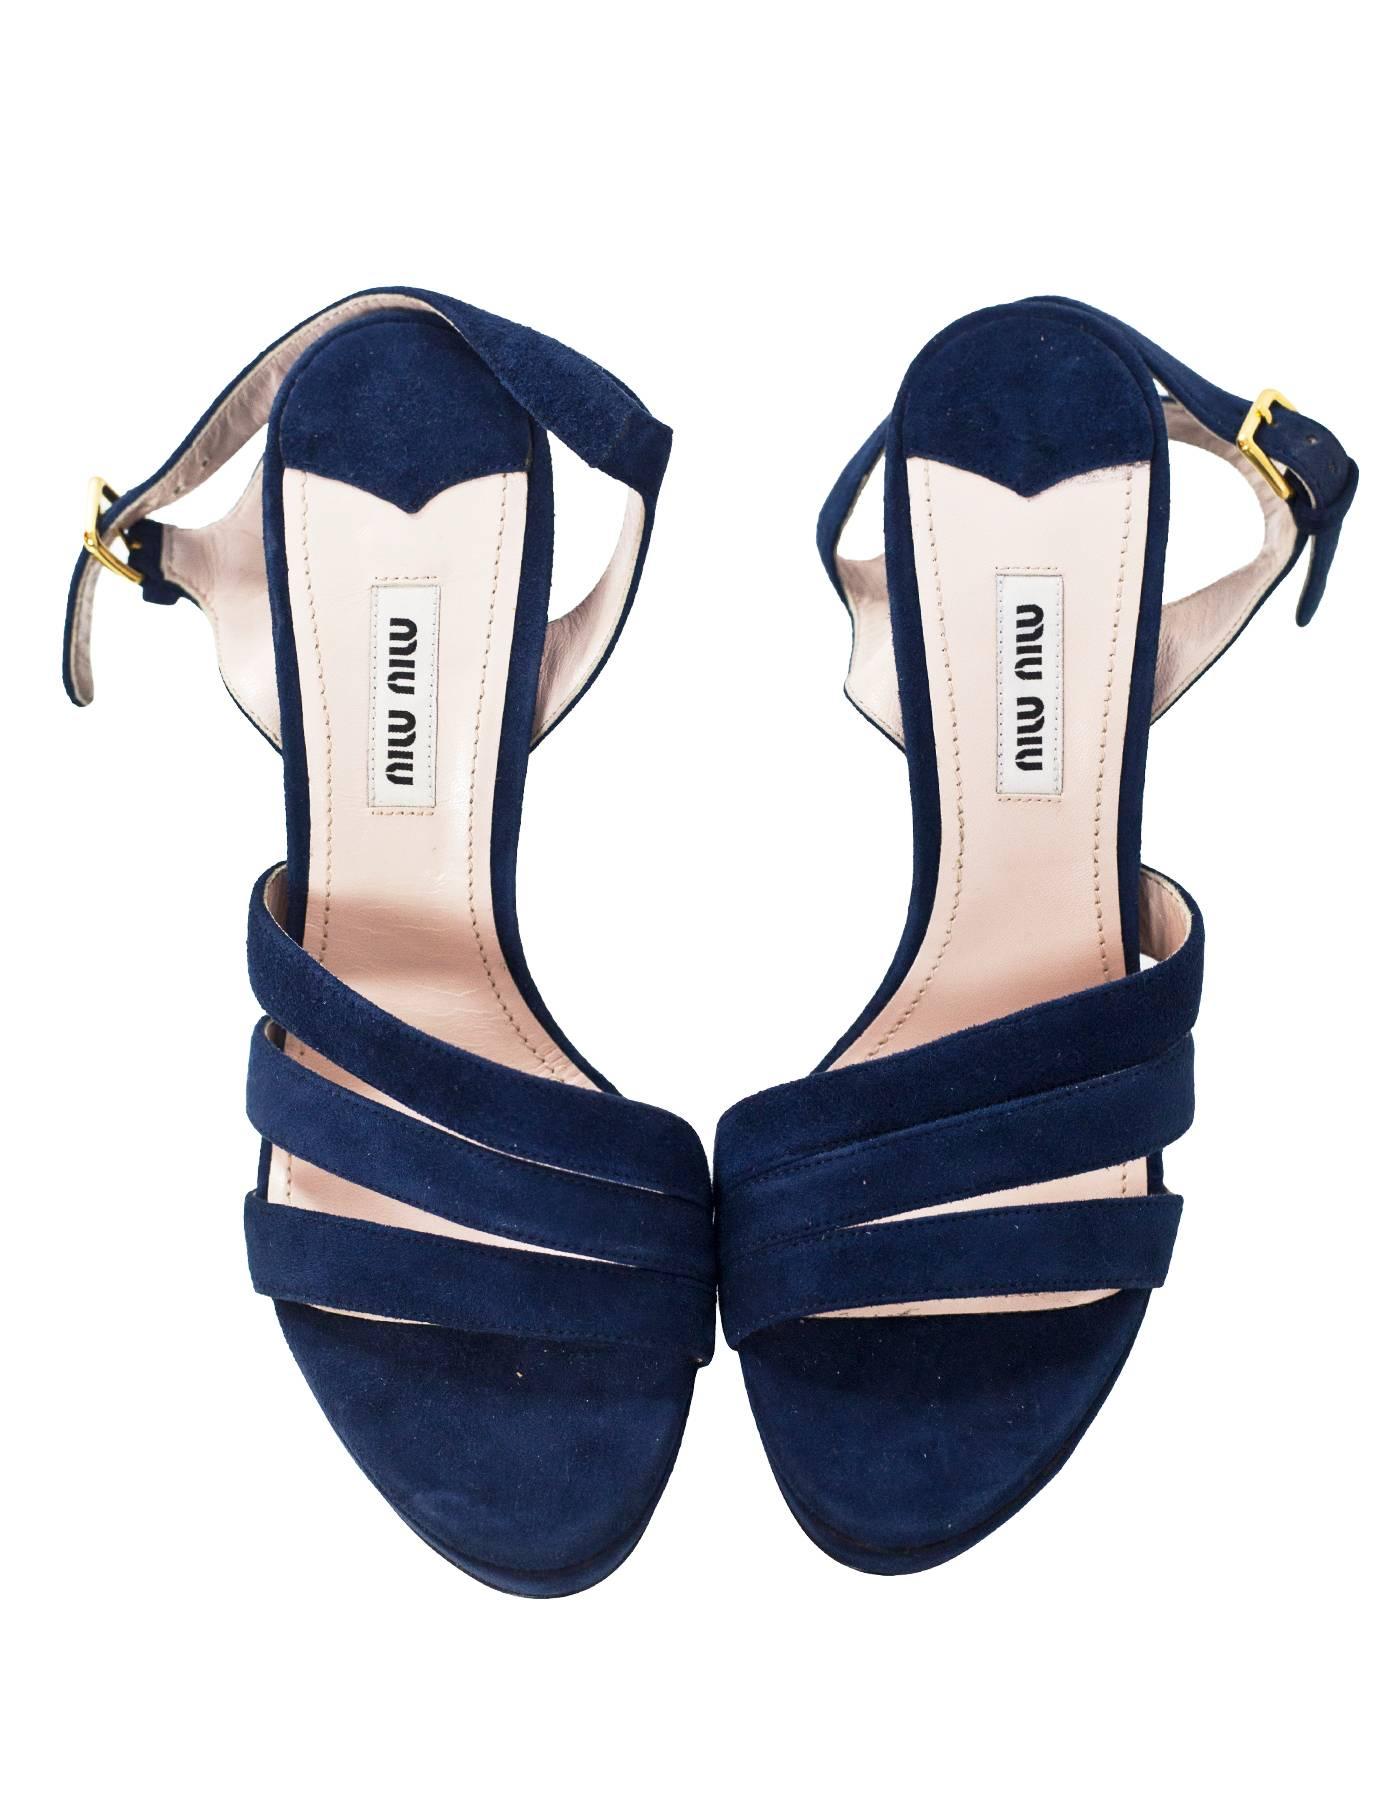 Black Miu Miu Blue Suede Sandals Sz 36.5 NEW